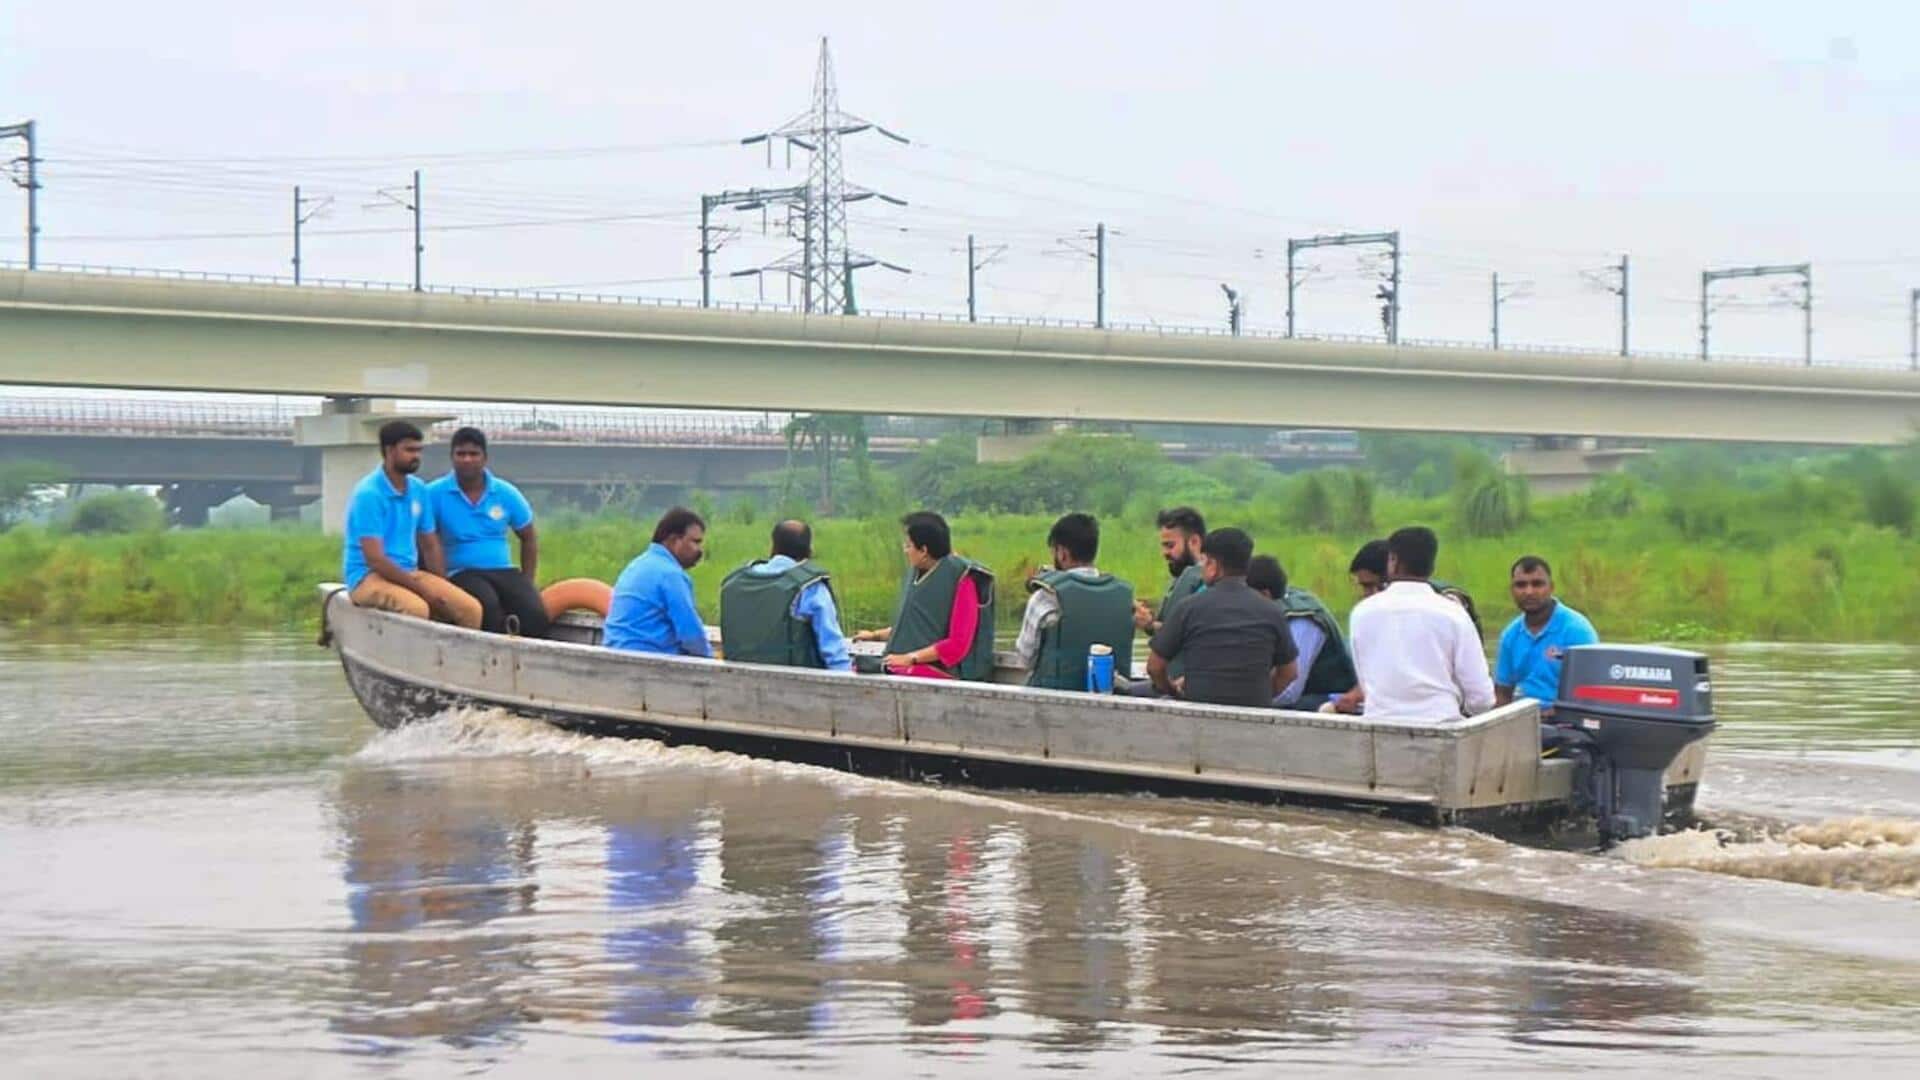 दिल्ली: तेजी से बढ़ रहा यमुना का जलस्तर, बाढ़ग्रस्त इलाकों में धारा 144 लागू की गई